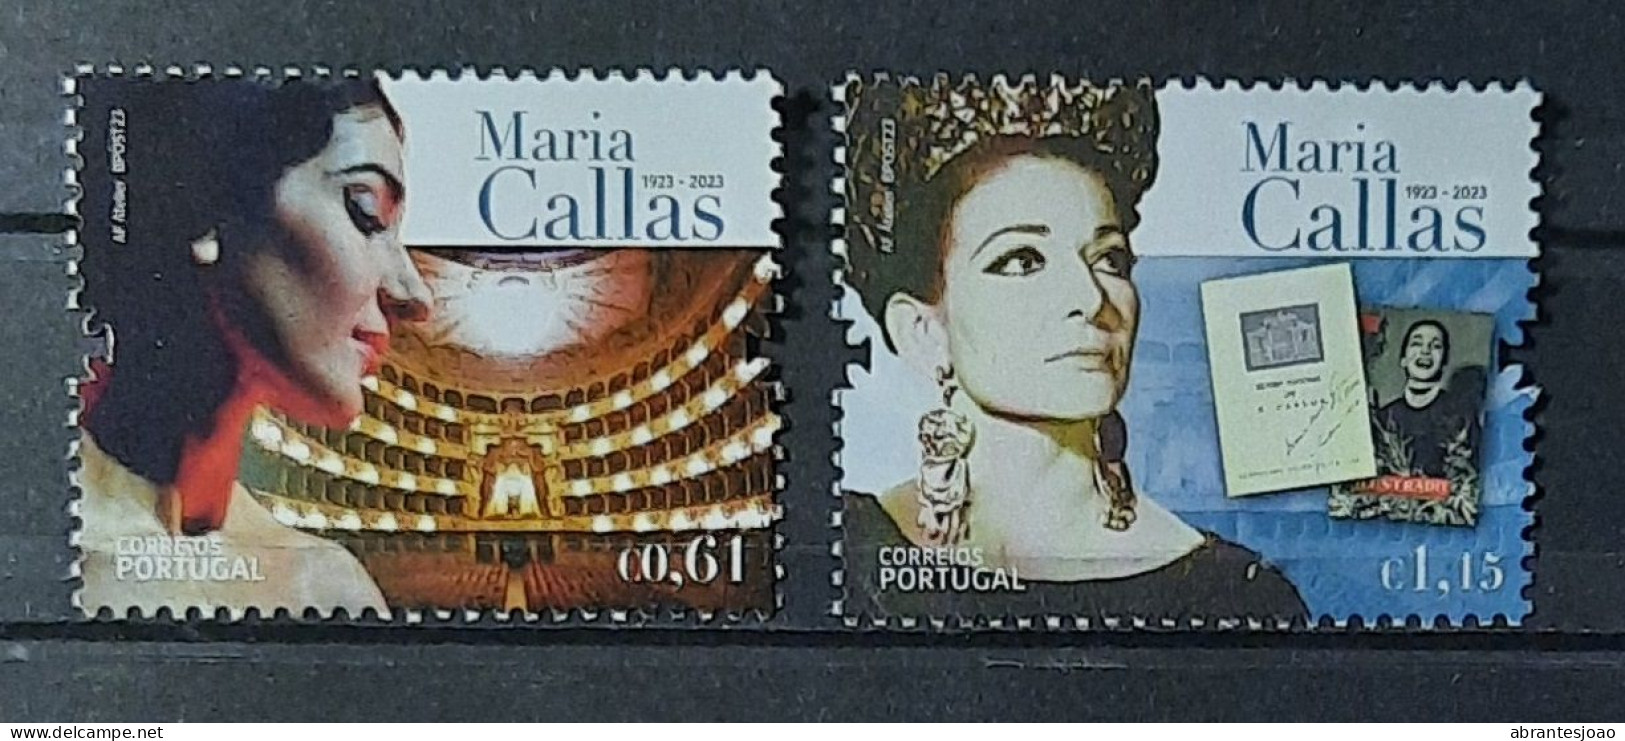 2023 - Portugal - MNH - Centenary Of Maria Callas - Opera Diva - 2 Stamps - Nuovi